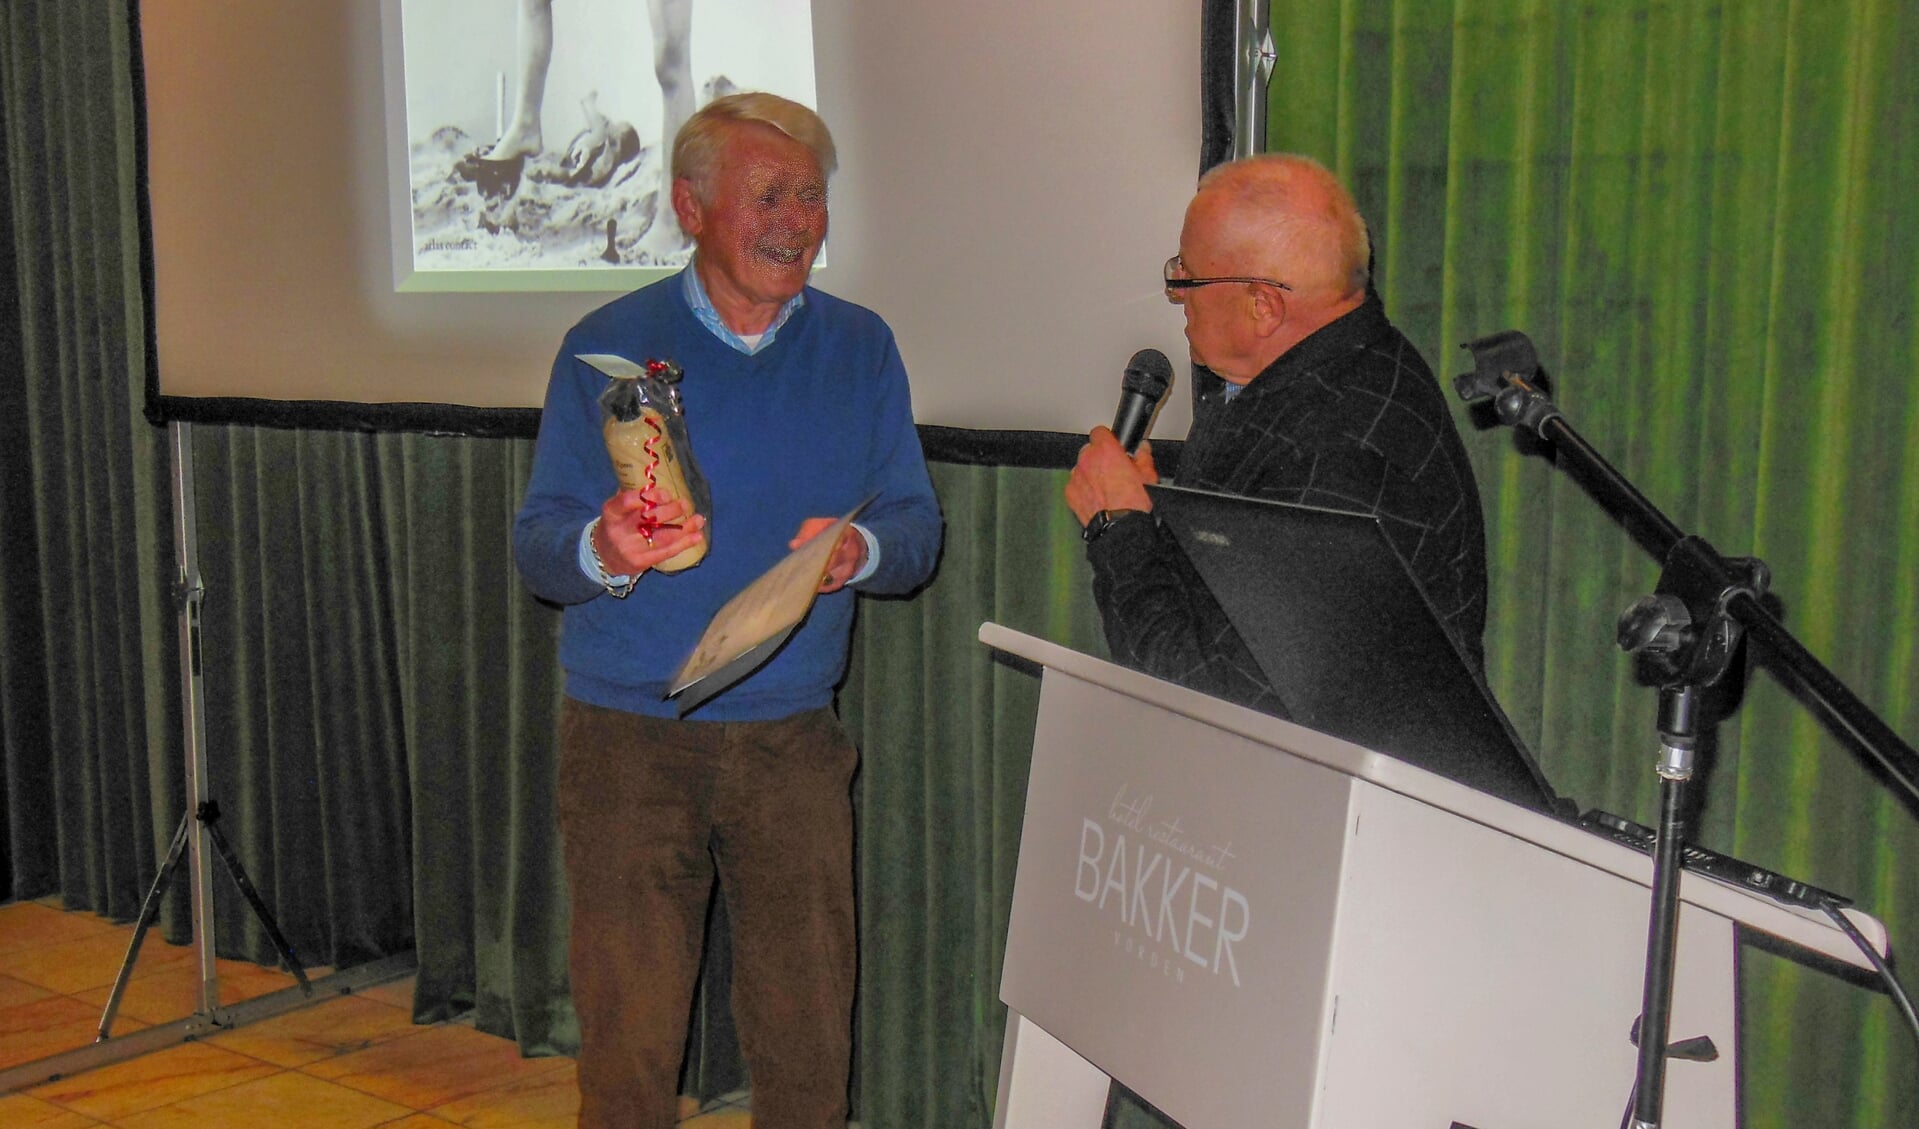 Vicevoorzitter Rinus Ilbrink had de eer Wim Ruiterkamp te benoemen tot erelid van Oud Vorden. Foto: Oud Vorden